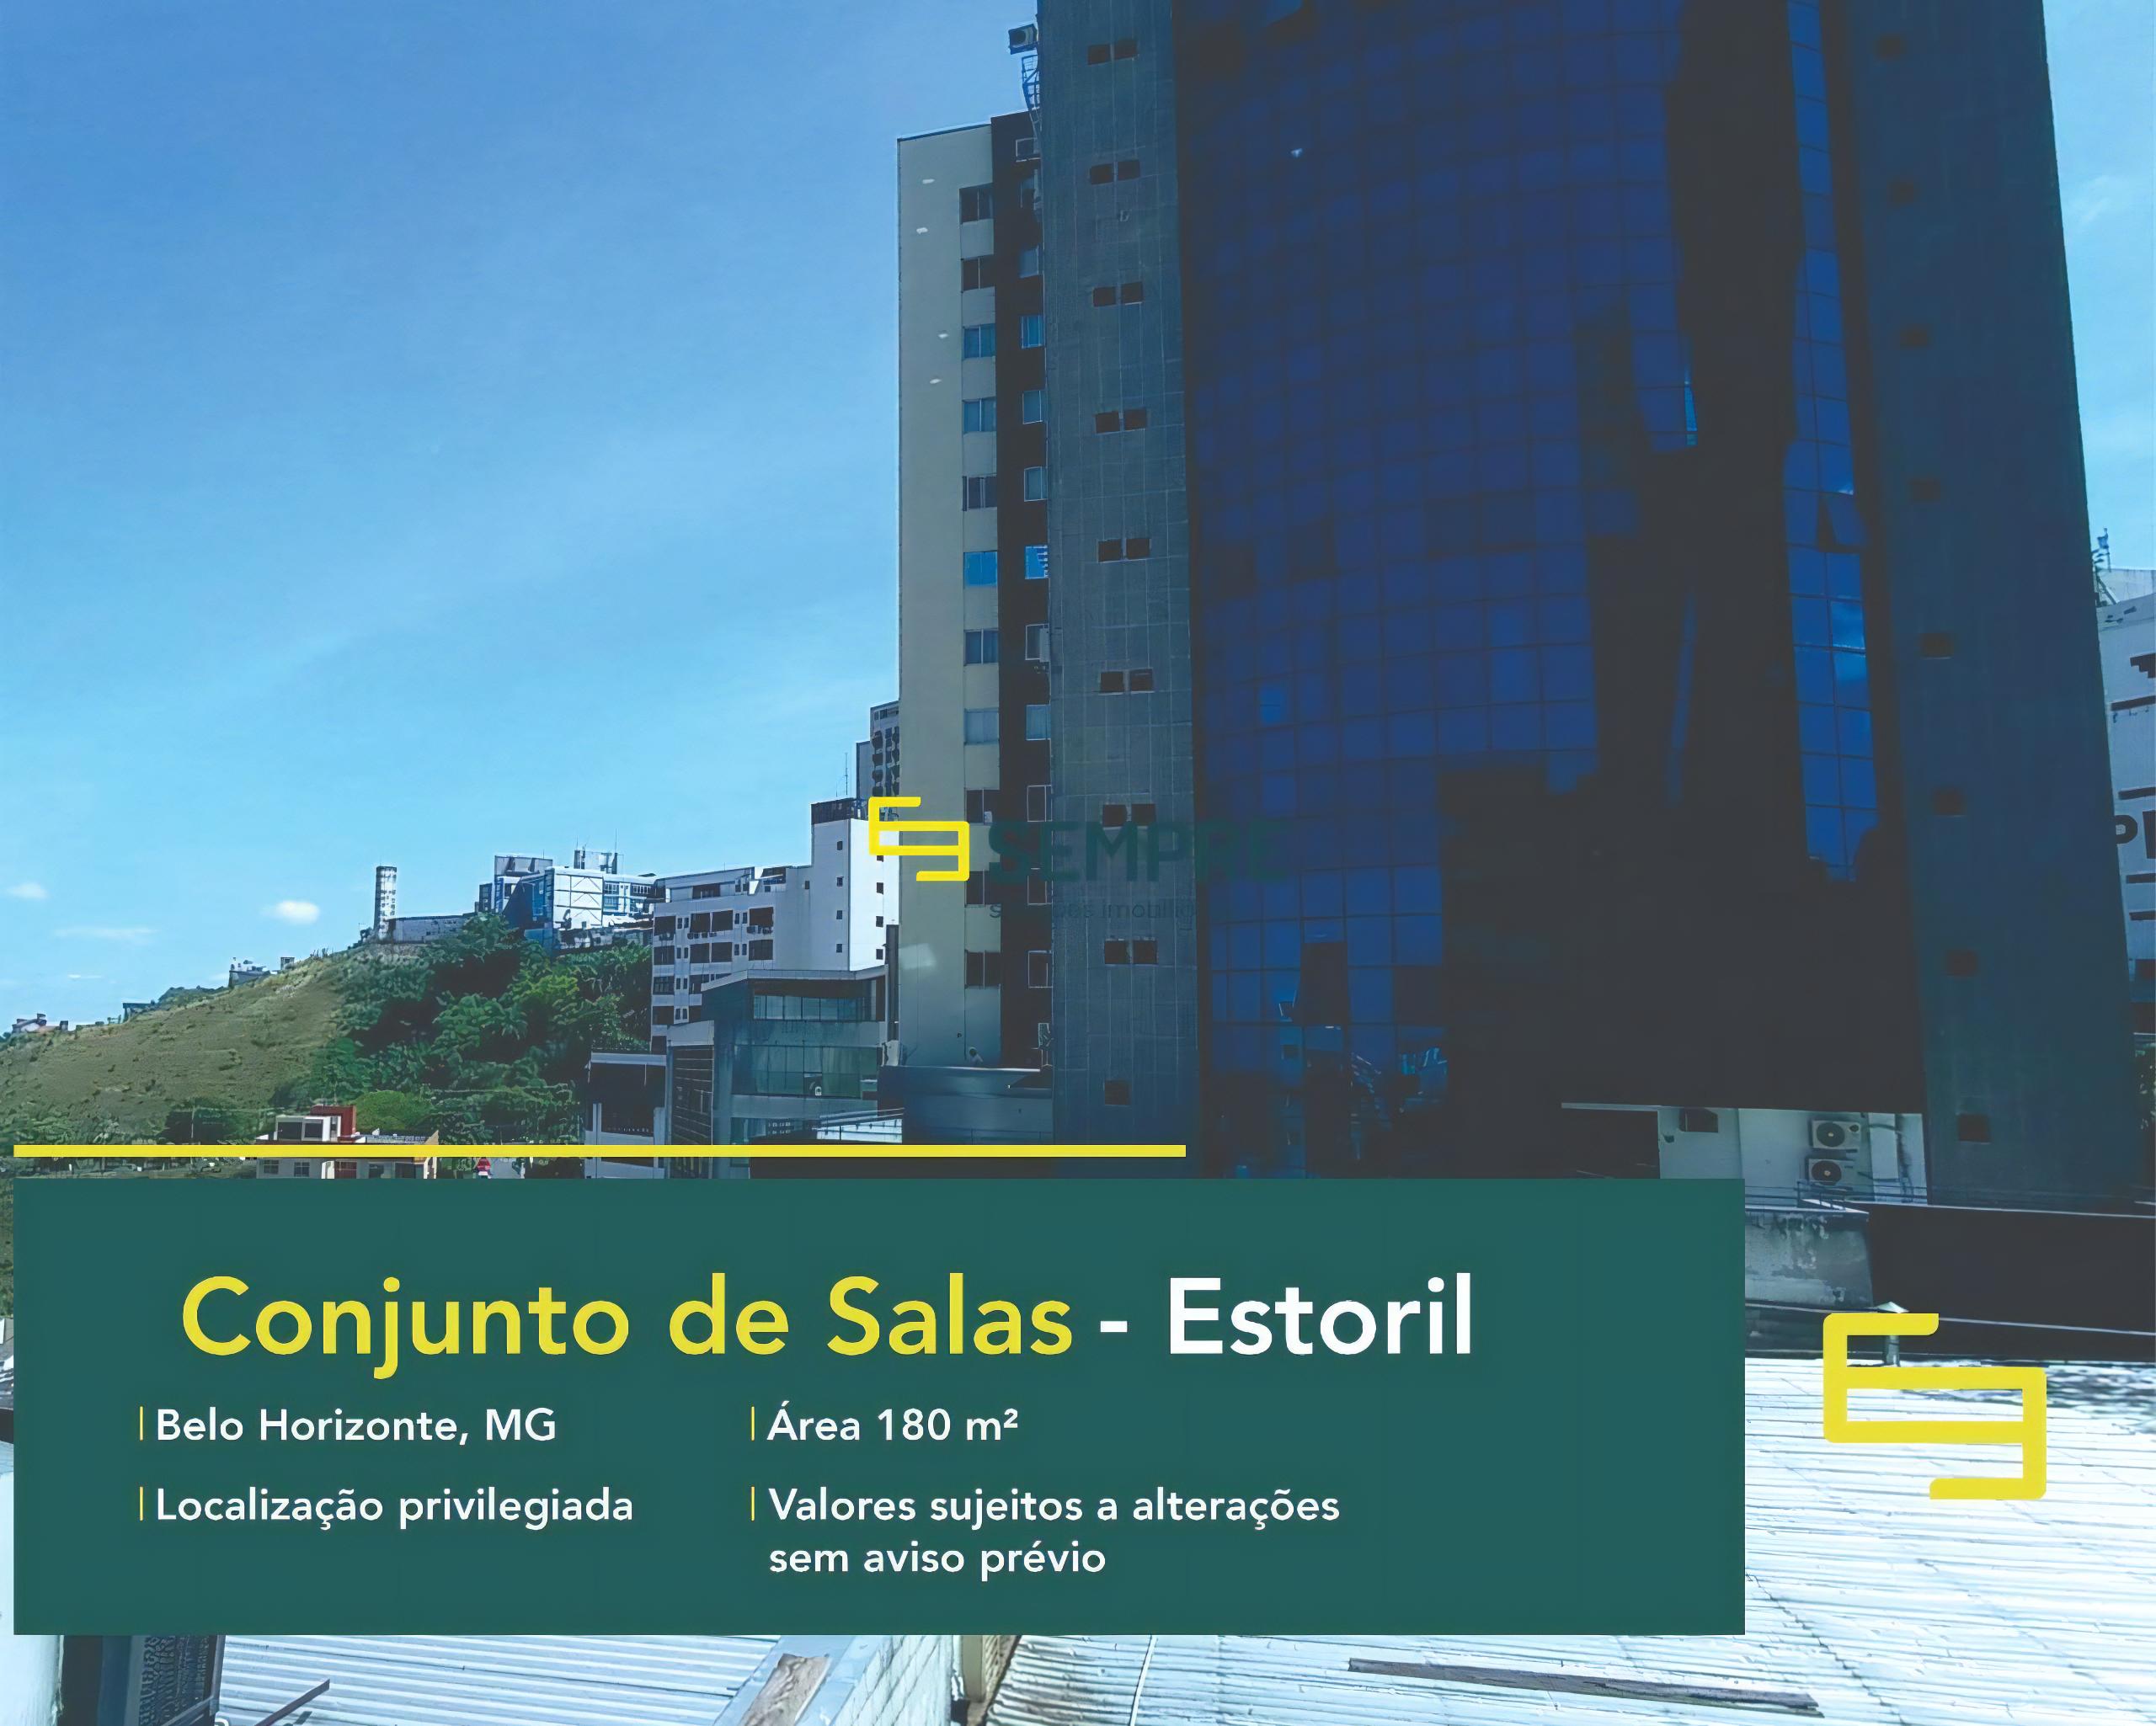 Sala comercial no Estoril para alugar em Belo Horizonte, excelente localização. O estabelecimento comercial conta com área de 180 m².